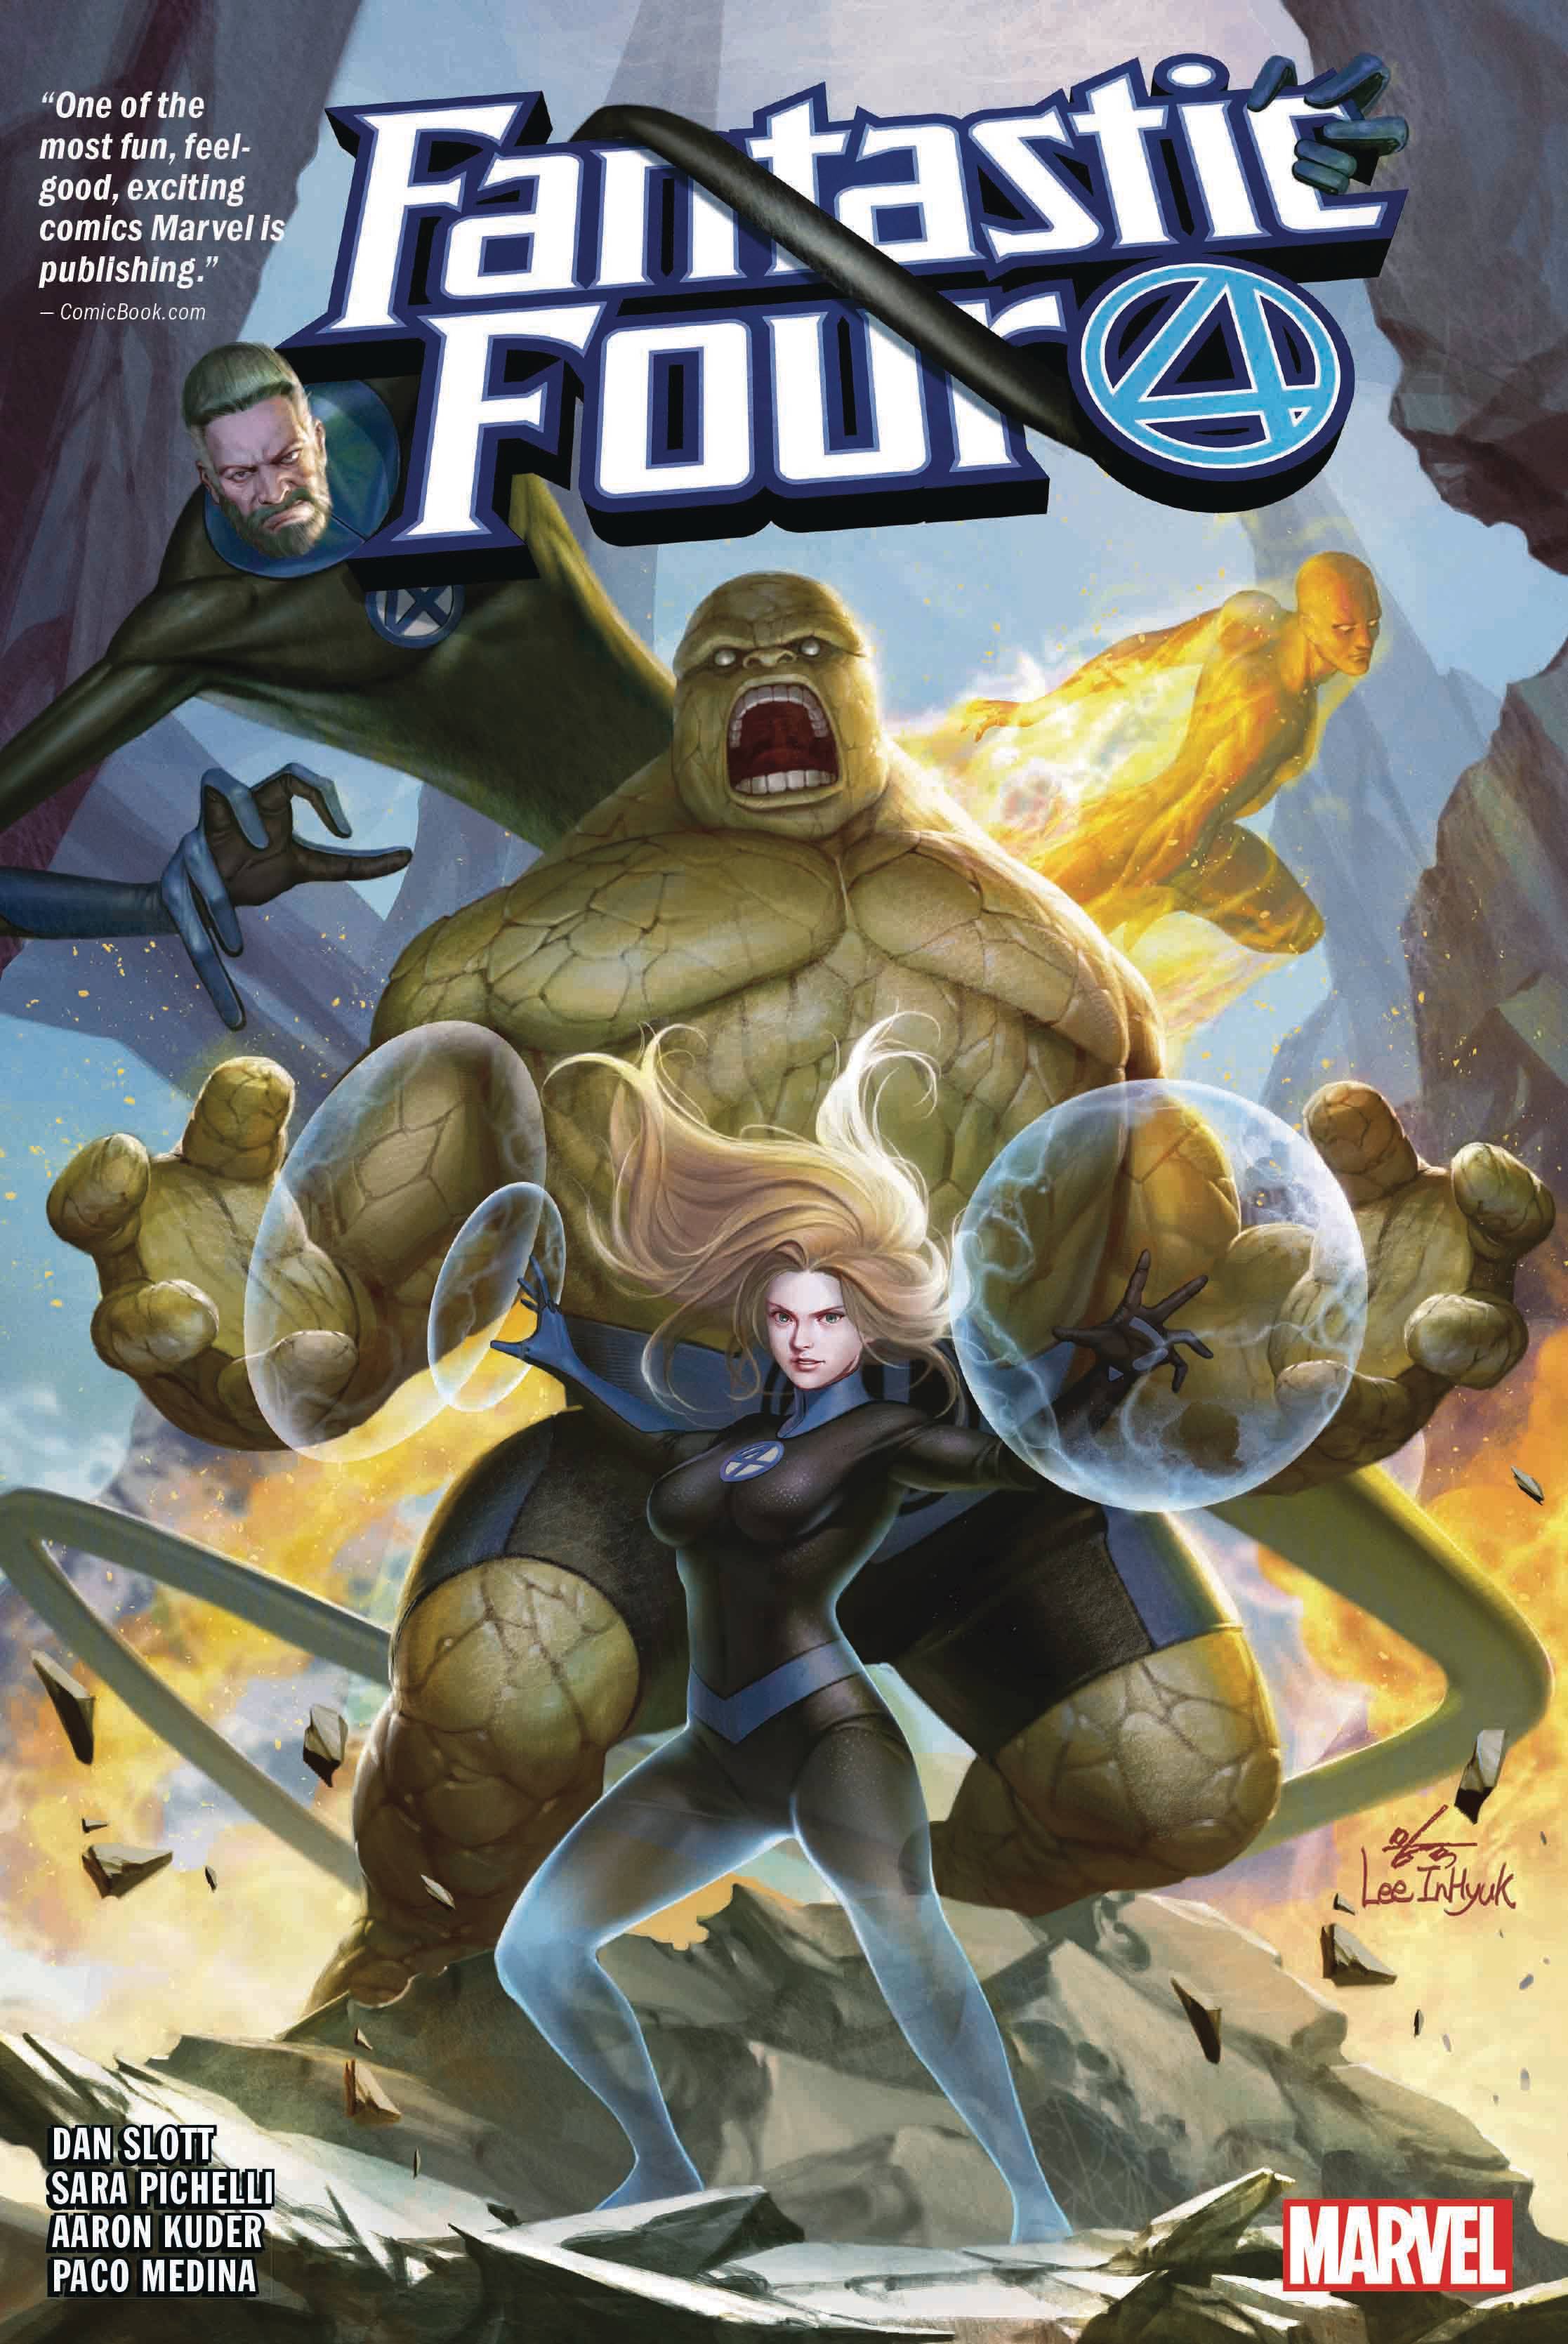 Fantastic Four by Dan Slott Hardcover Volume 1